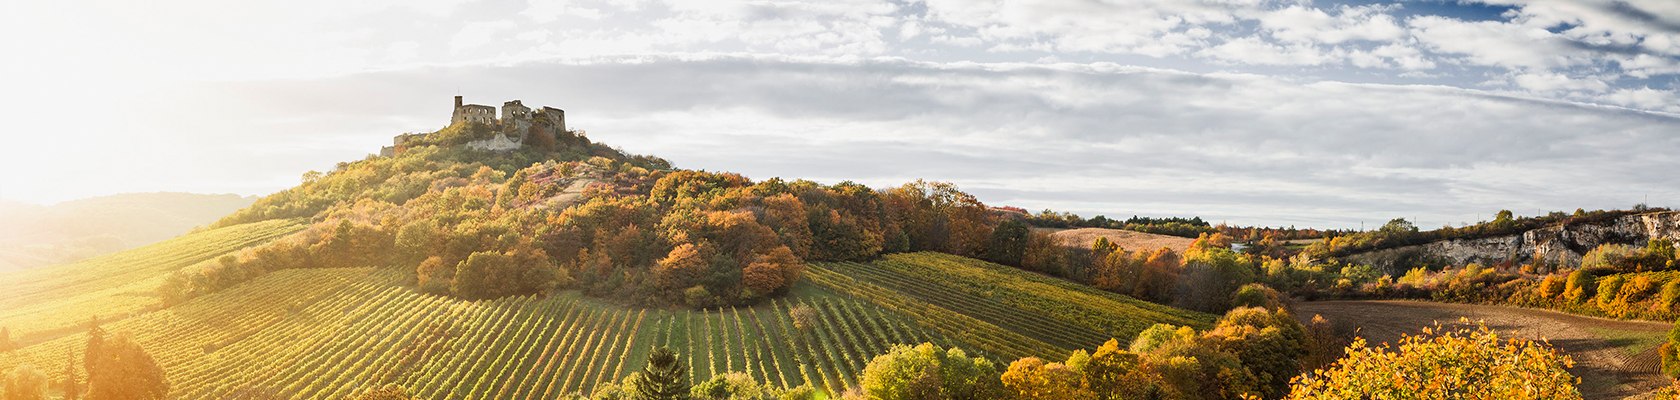 Der Herbst zieht ins Land ...., © Niederösterreich Werbung / Michael Liebert